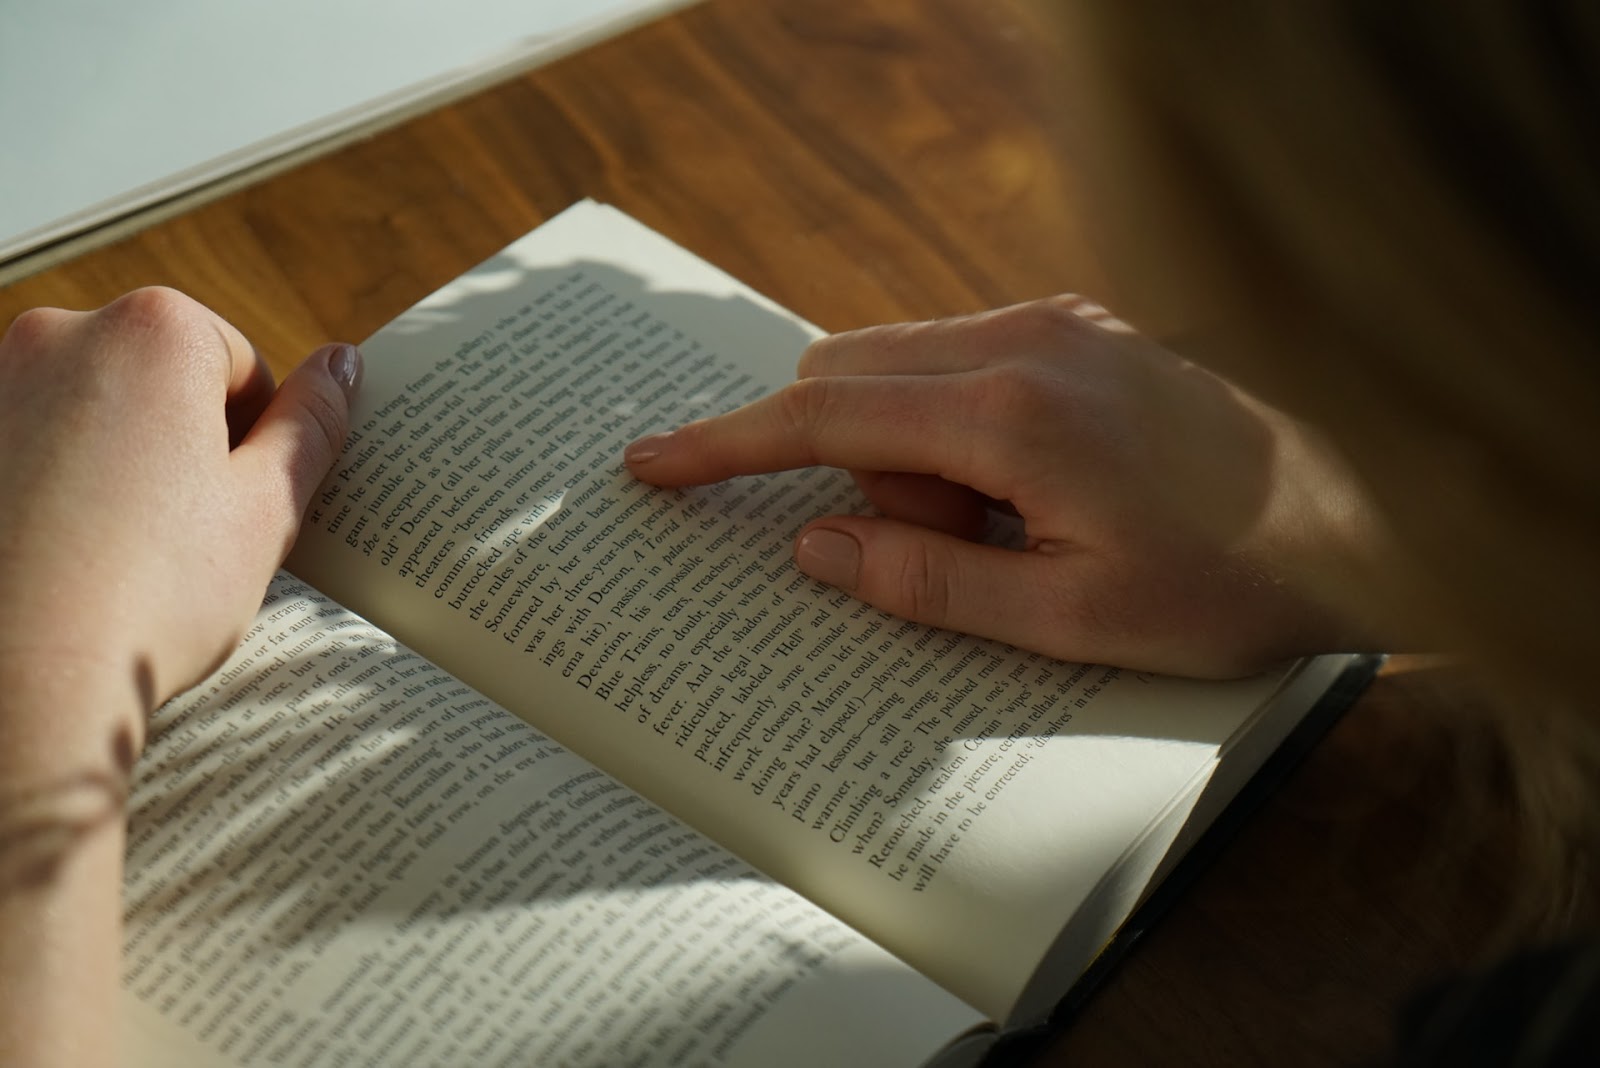 A imagem mostra as mãos de uma mulher sobre um livro. Com o dedo indicador da mão direita ela acompanha a leitura do livro. Também é possível ver os cabelos loiros da mulher desfocados no canto direito da imagem. 